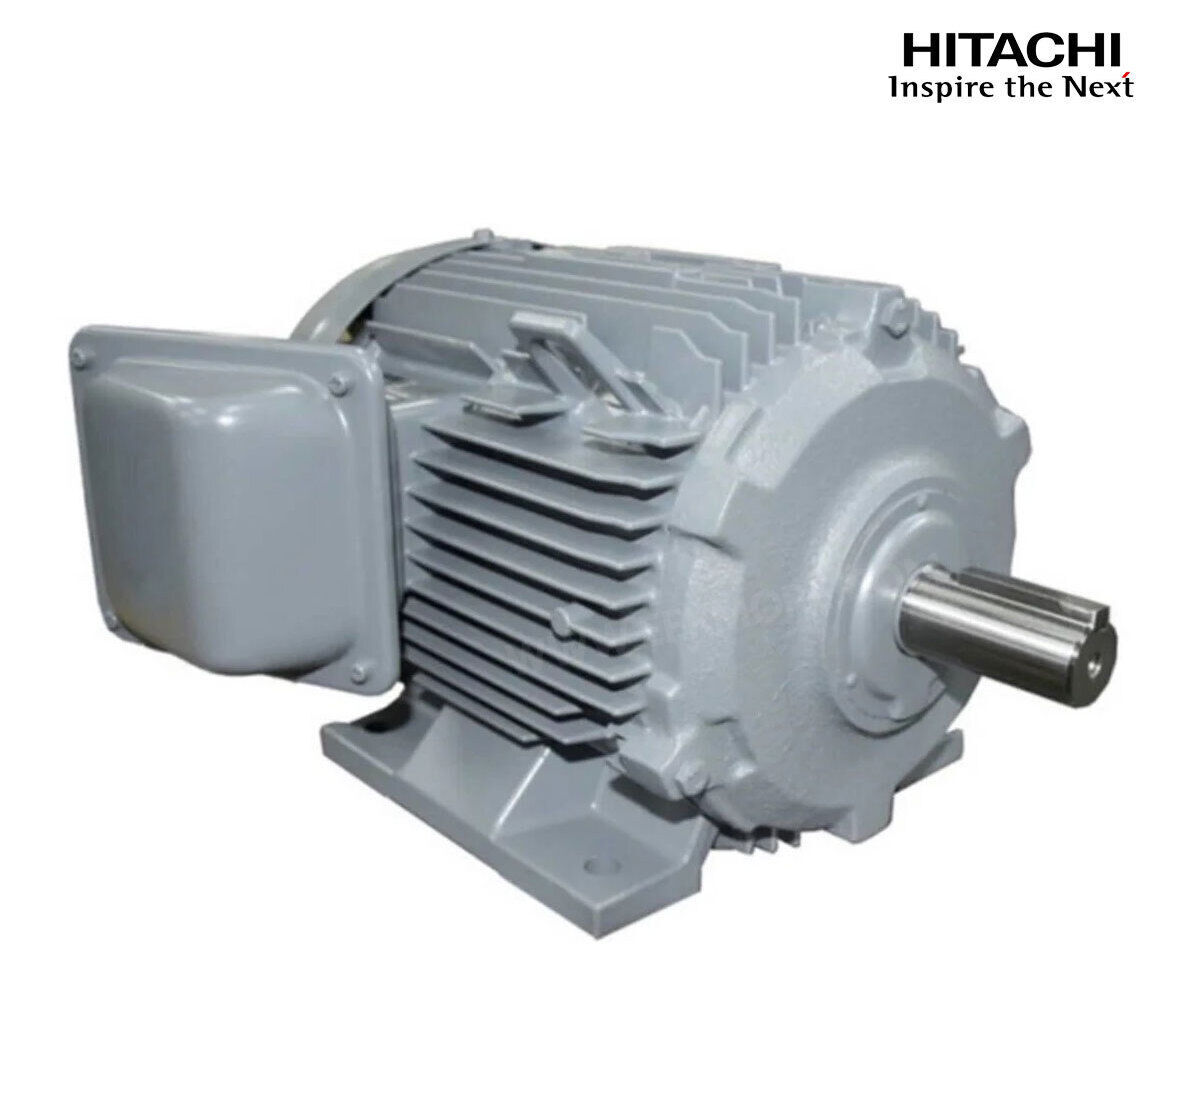 มอเตอร์ฮิตาชิของแท้ 100% HITACHI รุ่น TFO-KK กำลัง 20 แรงม้า (15 KW.) กำลังไฟฟ้าที่ใช้ 380V ความเร็วรอบตัวเปล่า 1450 RPM แกนเพลามอเตอร์ 42 MM.รับประกัน 3 ปี มีของพร้อมจัดส่งทุกวัน